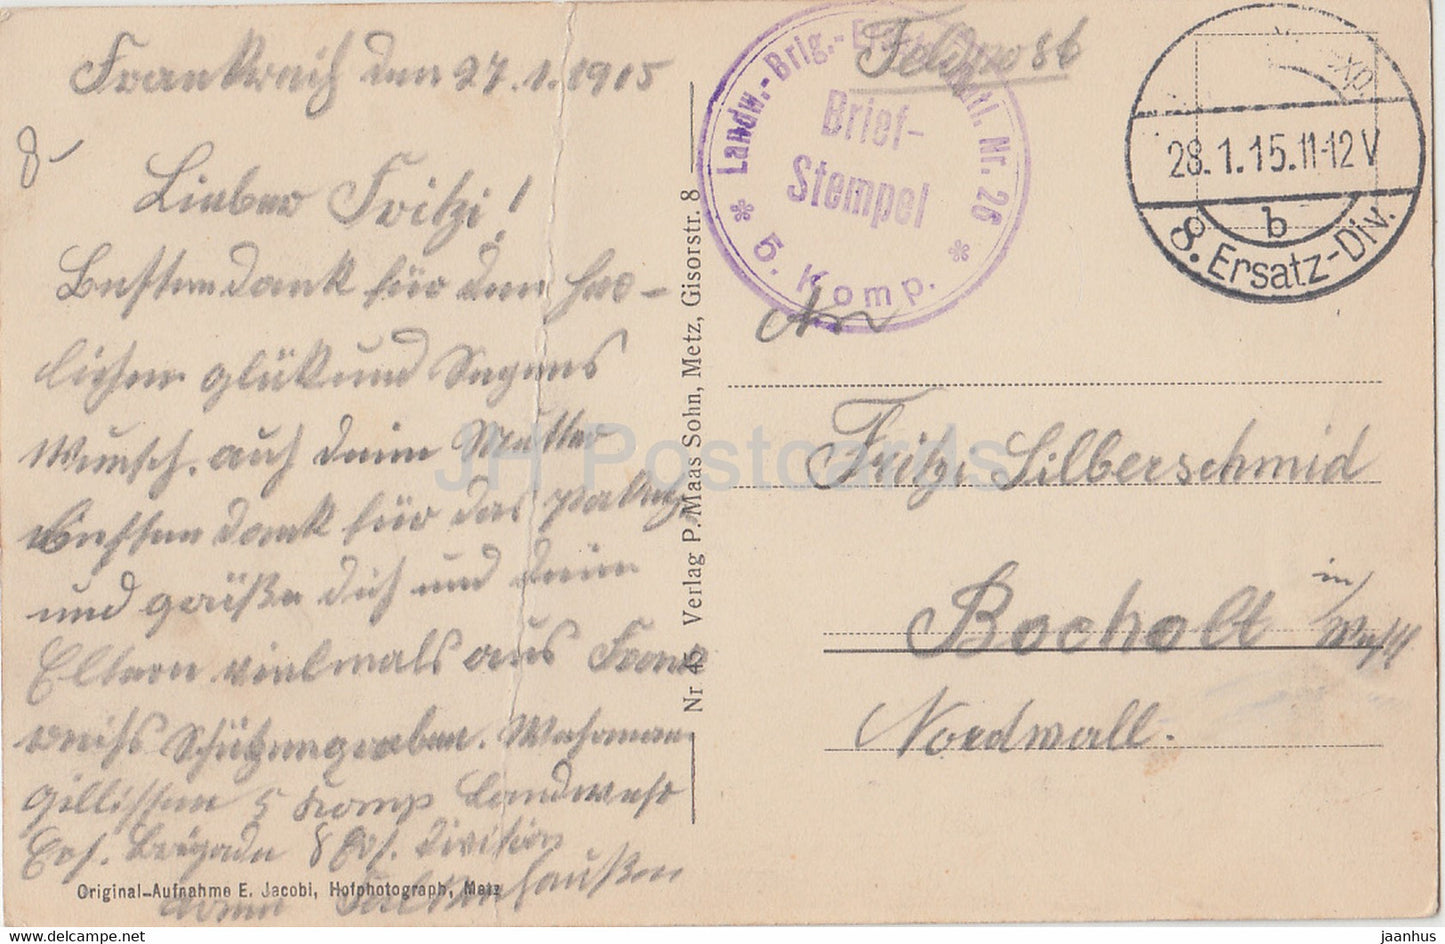 Schlachtfeld Buzy zwischen Conflans u Verdun - Offenes Heldengrab - Feldpost - carte postale ancienne - 1915 - France - utilisé